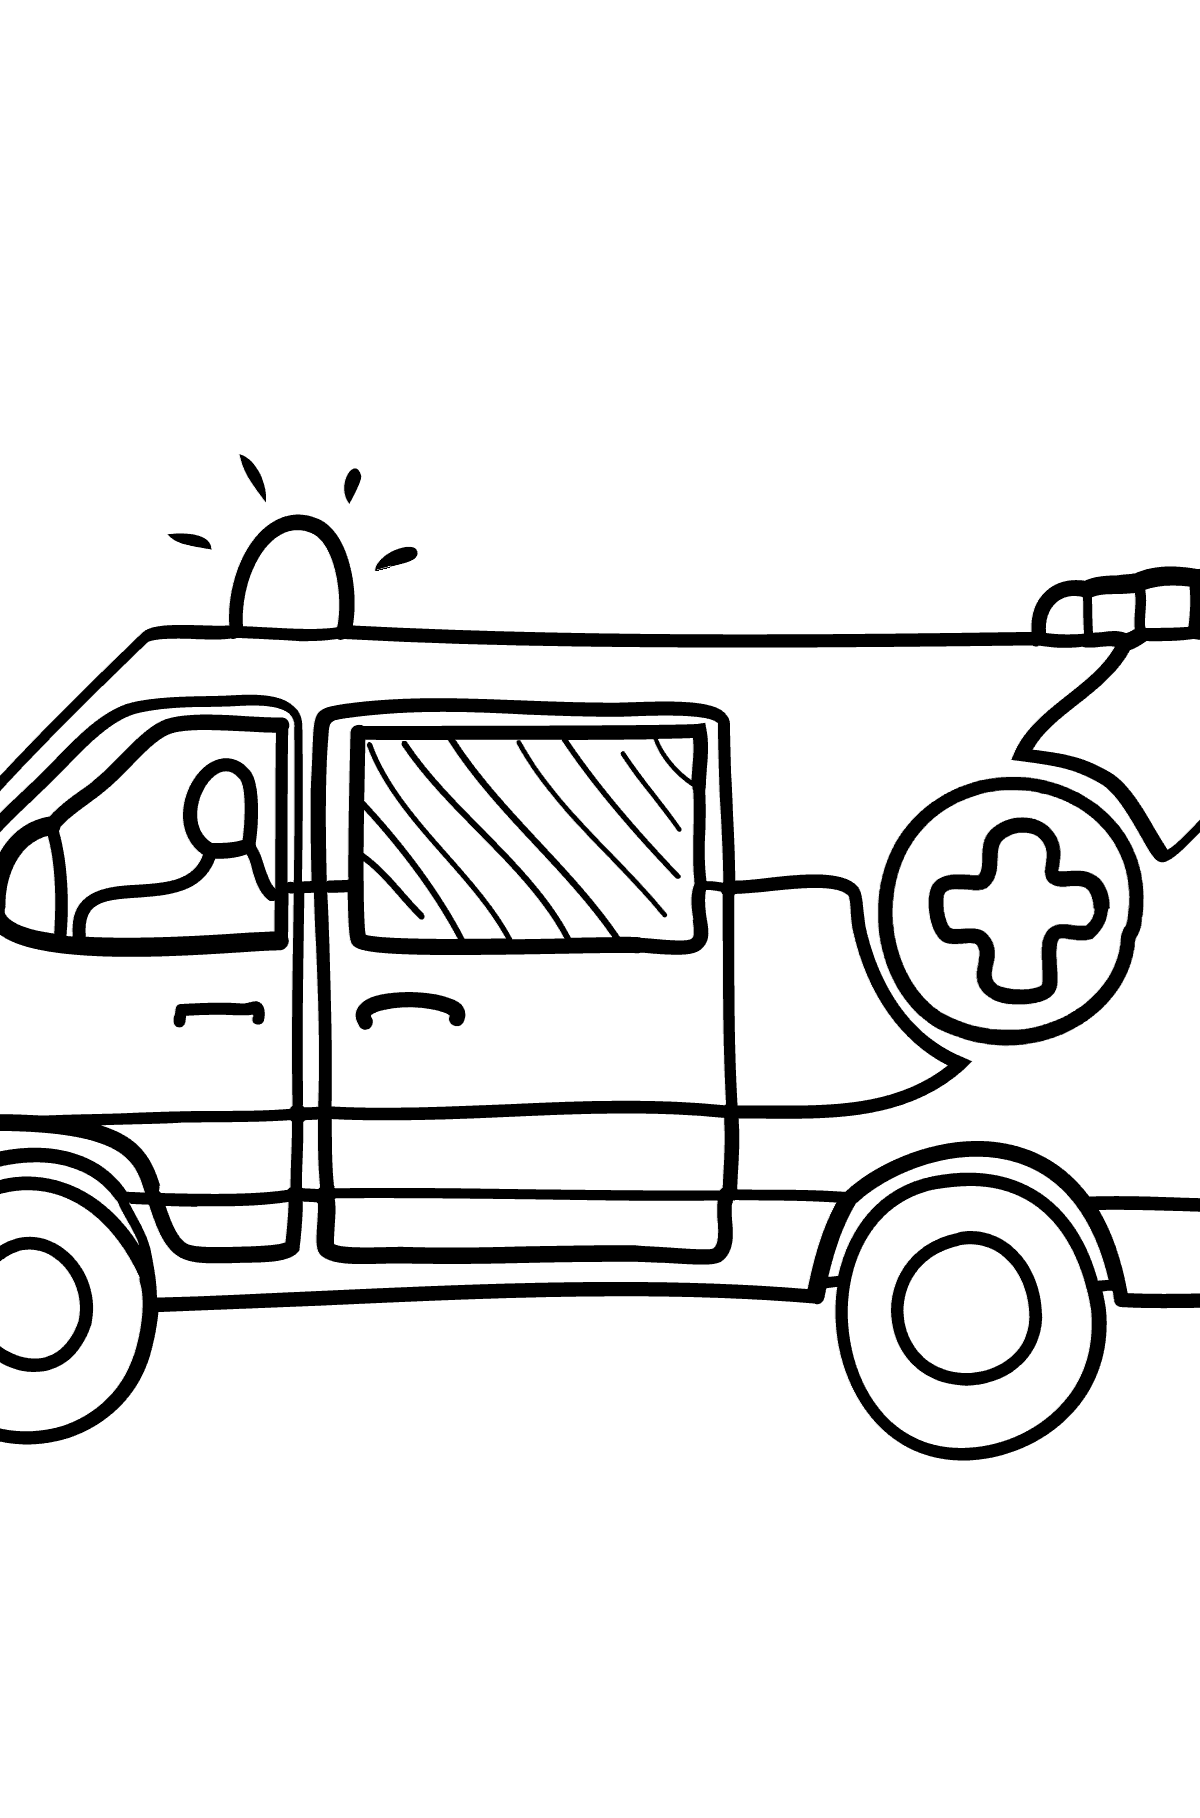 Desenho de ambulância para colorir - Imagens para Colorir para Crianças